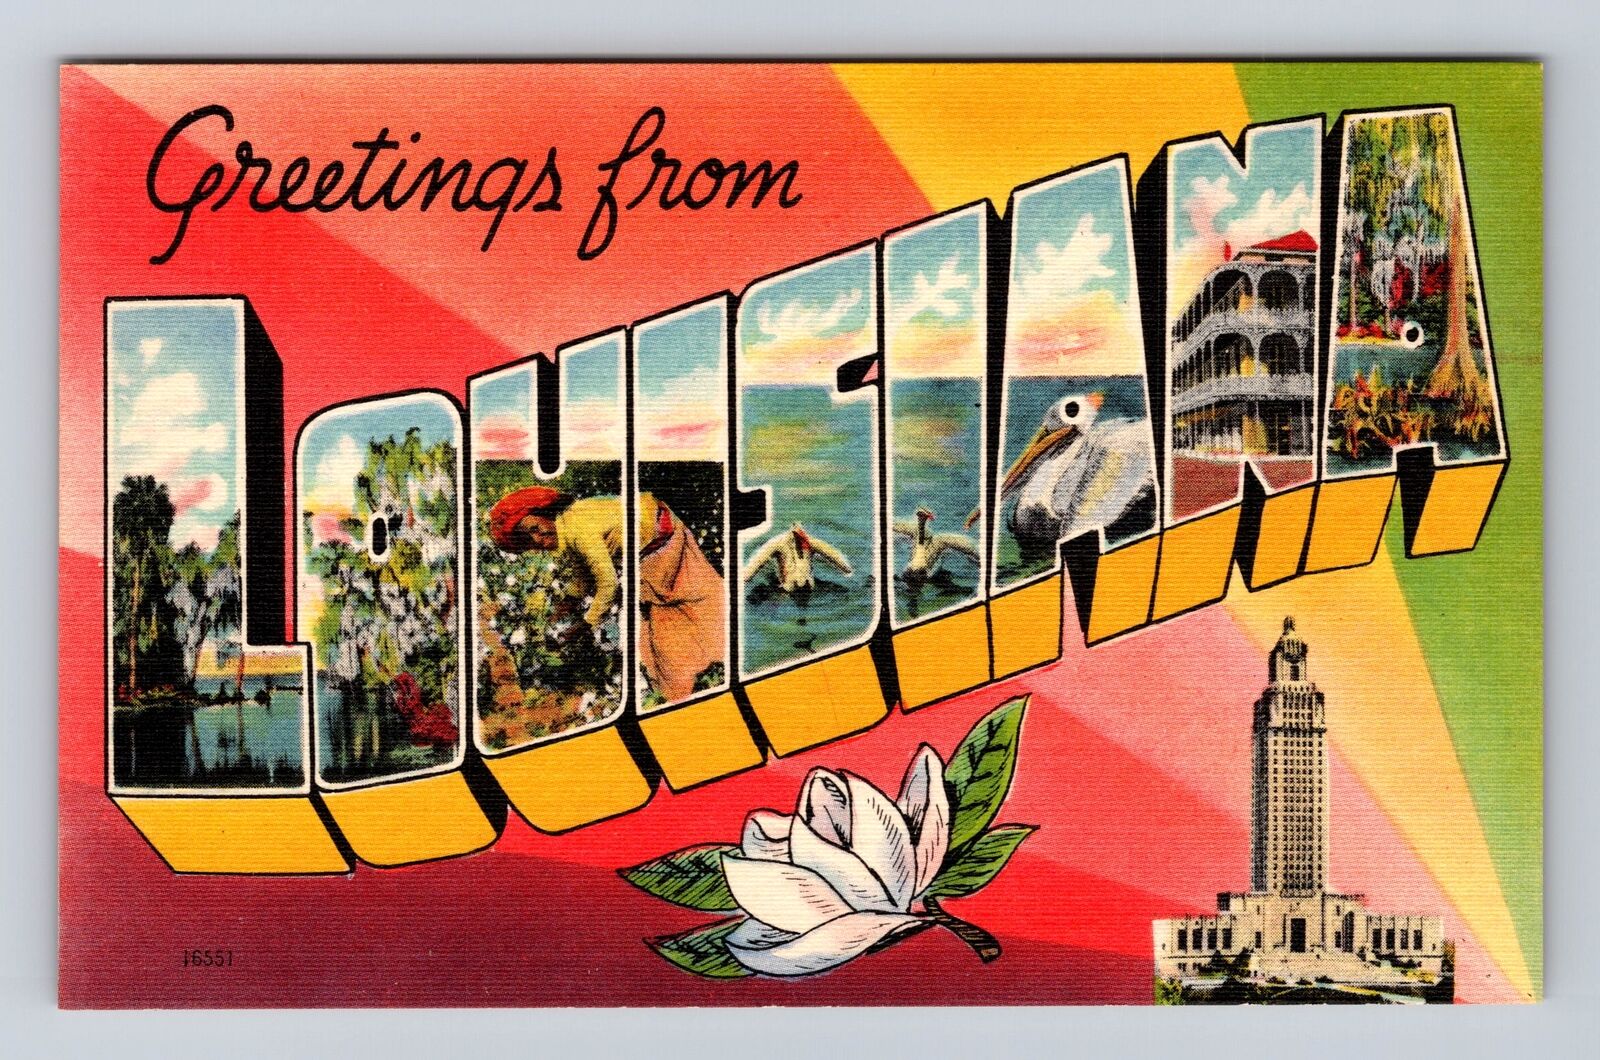 LA-Louisiana, LARGE LETTER GREETING Vintage Souvenir Postcard